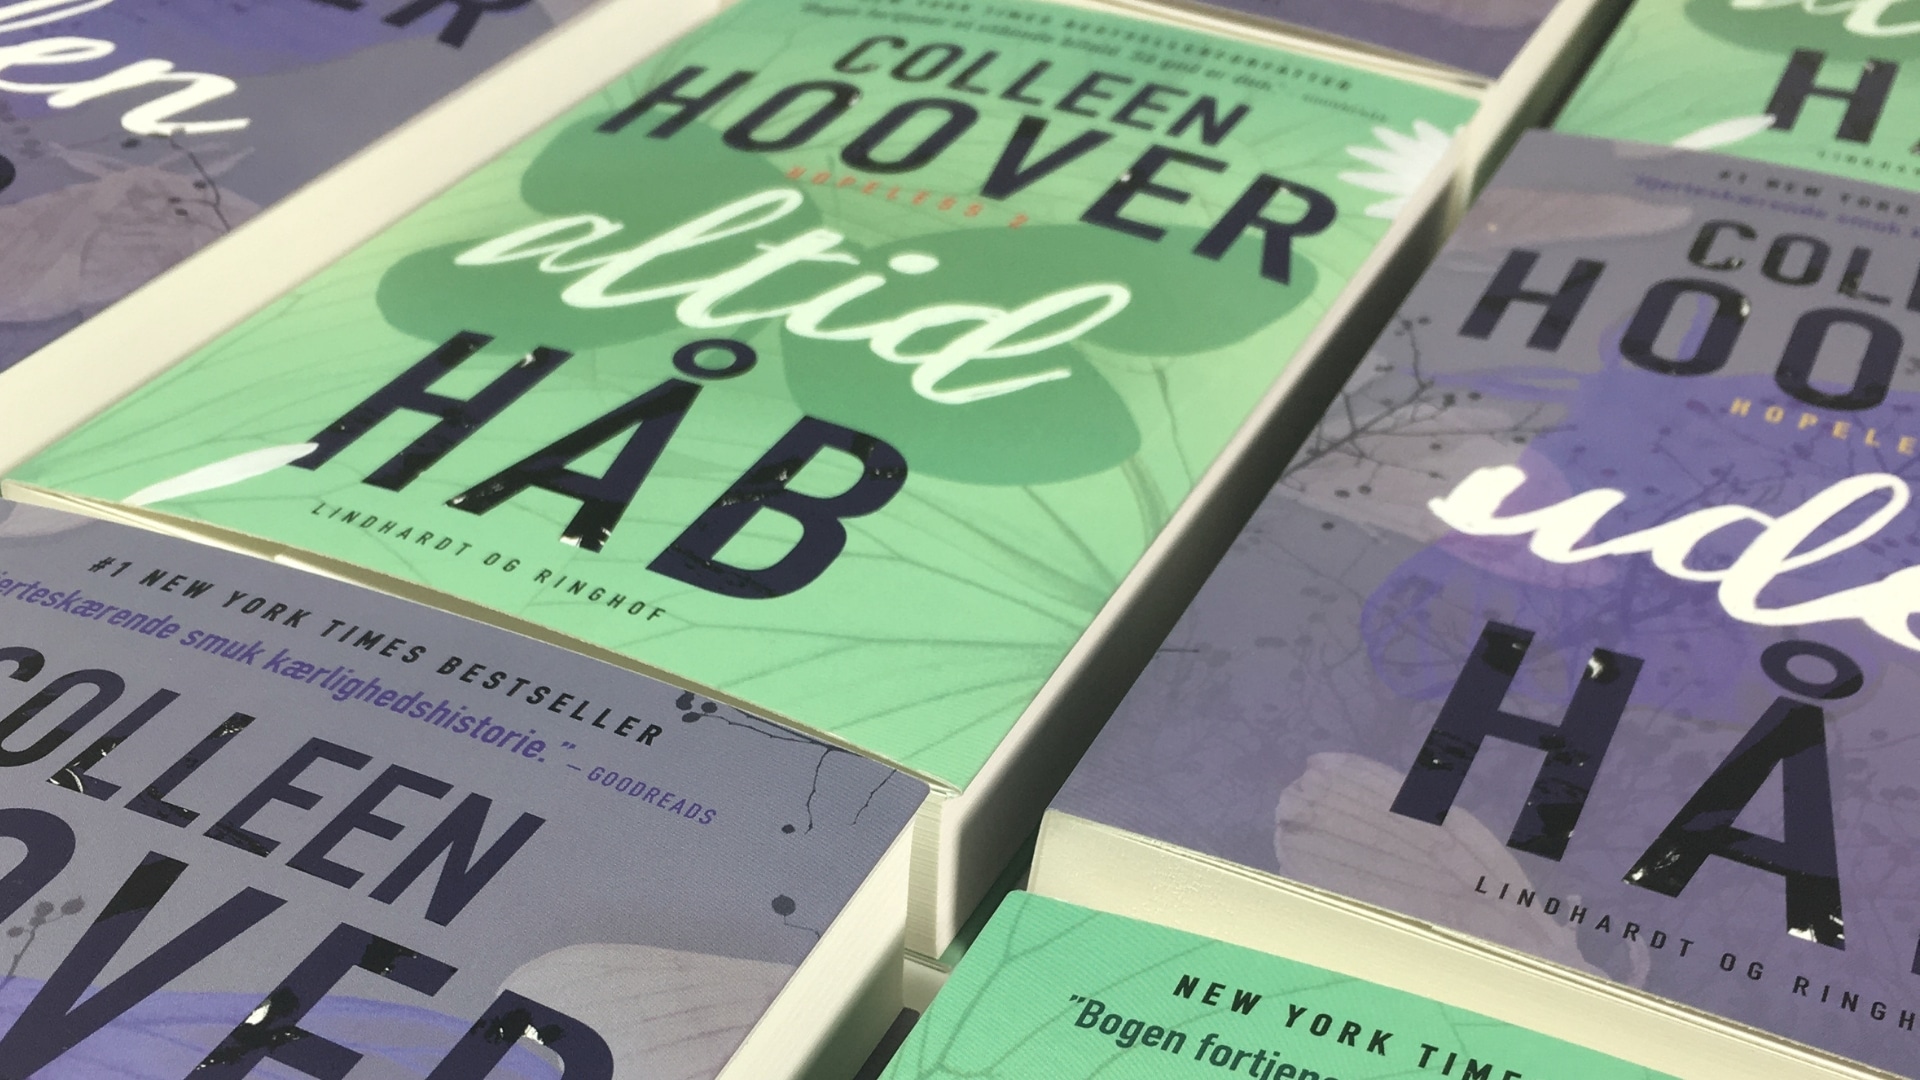 Hopeless-serien, Colleen Hoover, Hopeless, Uden håb, Altid håb, romance, kærlighedsbøger, kærlighedsroman